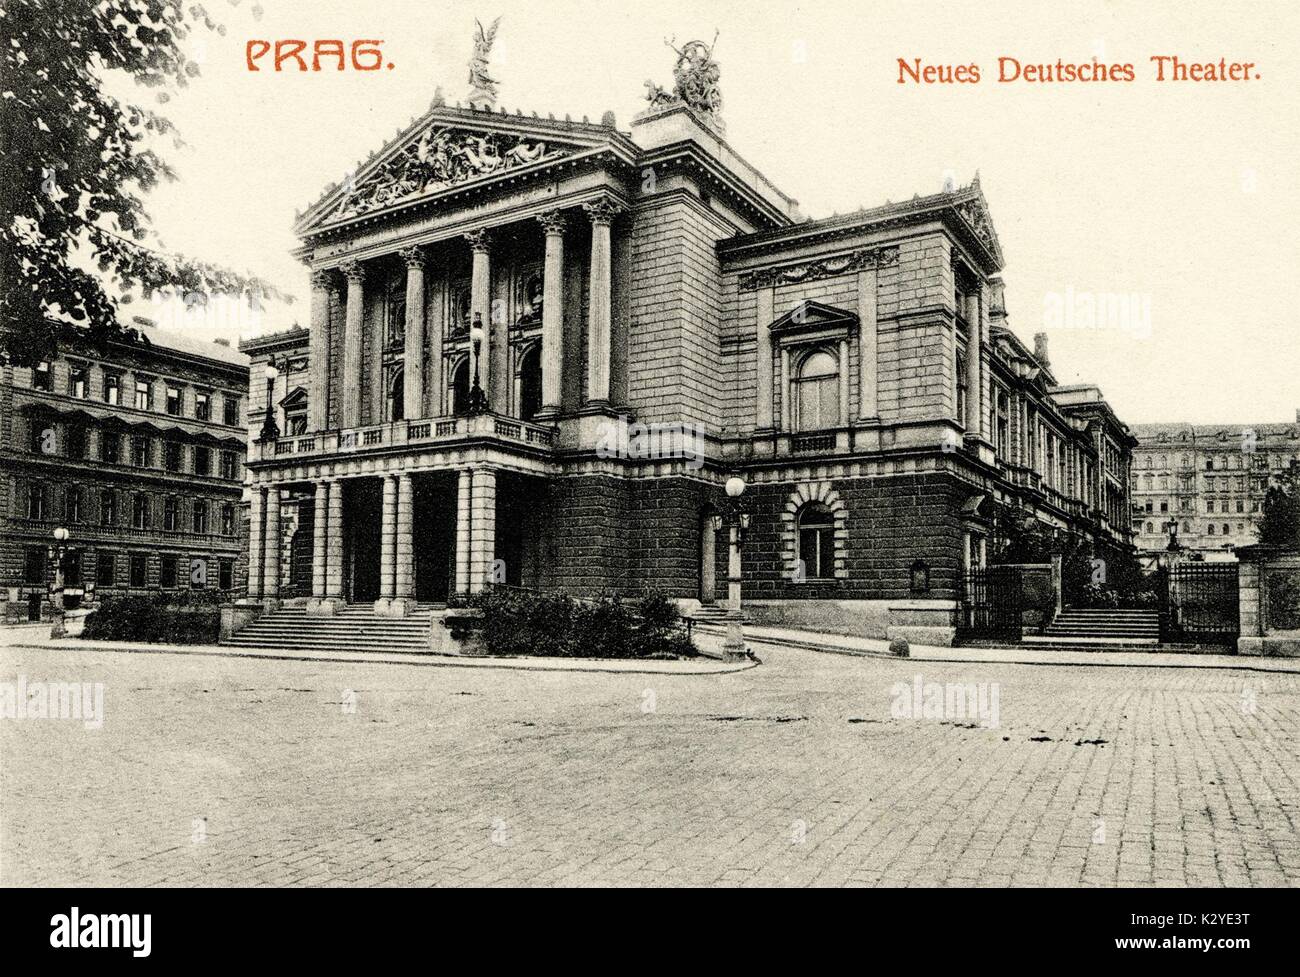 Prag. Neues Deutsches Theater. Neue deutsche Theater Stockfoto